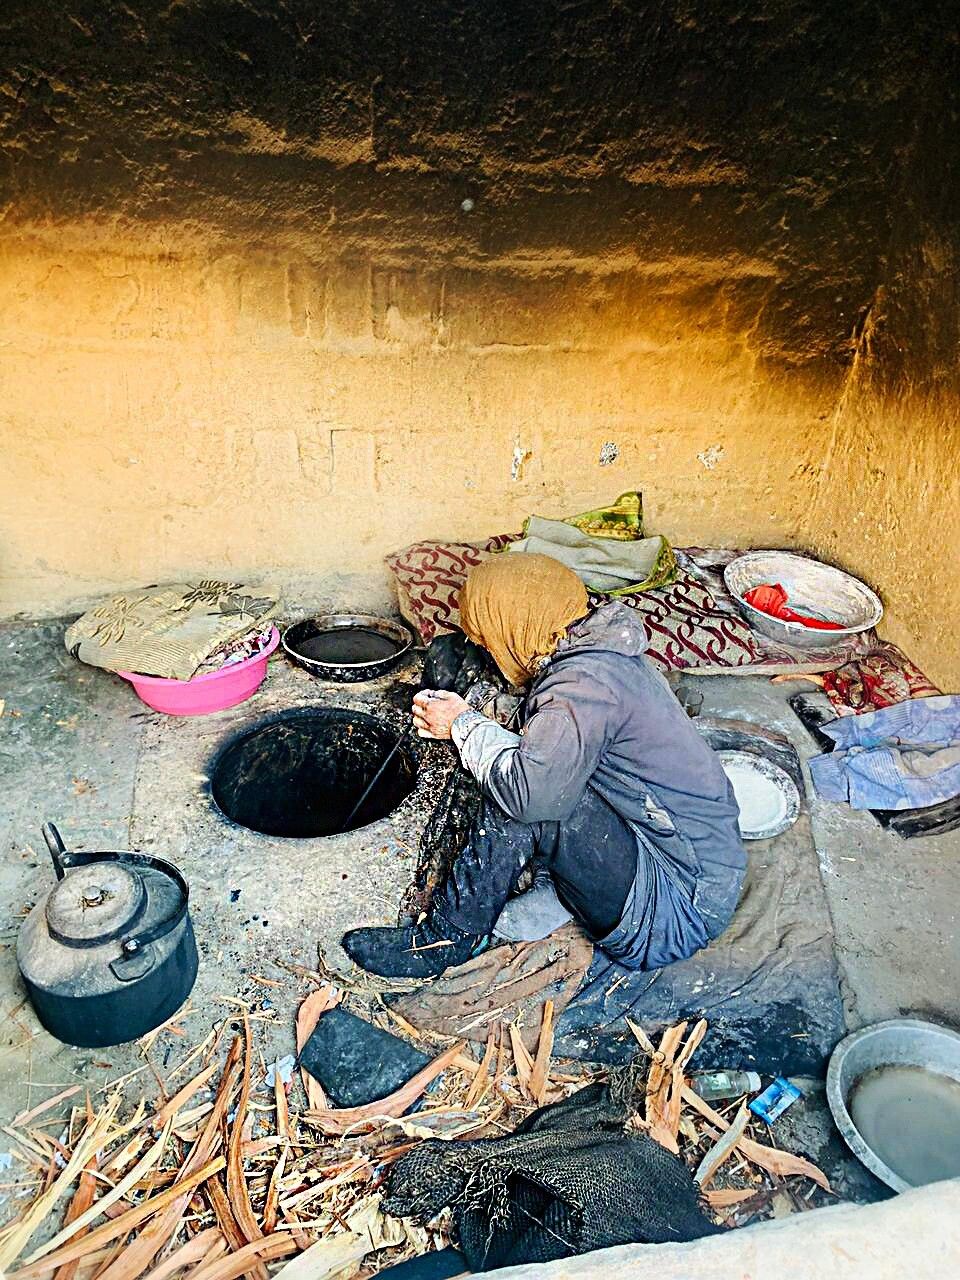 Una donna afghana cuoce il pane